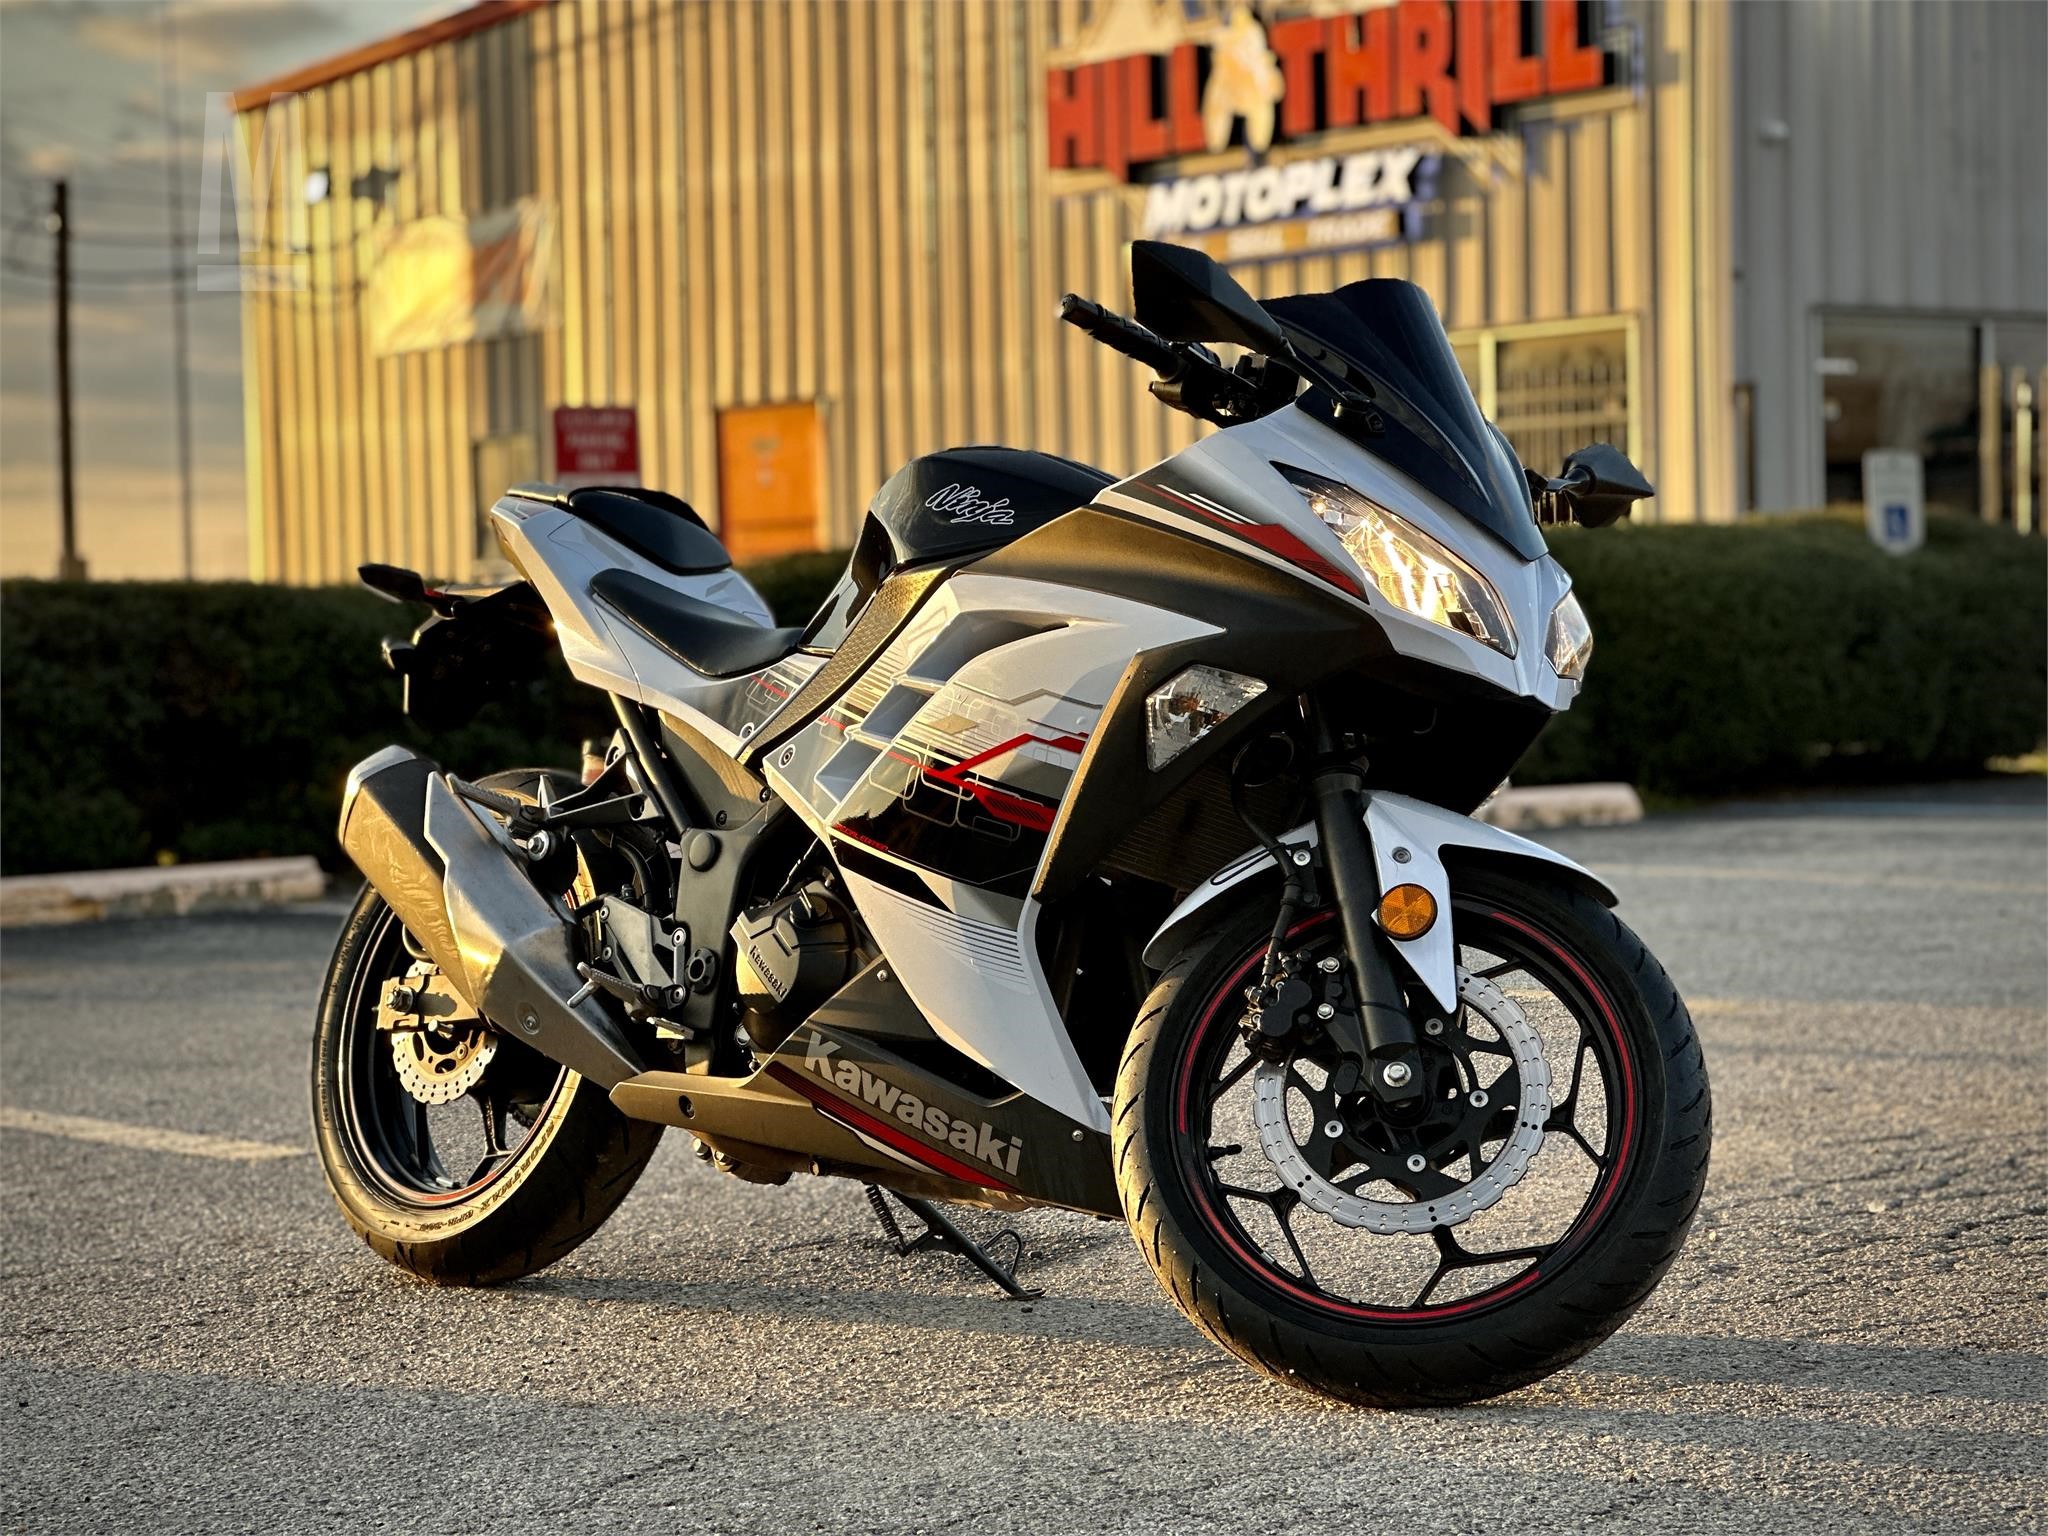 Kawasaki Moto 4, Motas e UTV Novas em Portugal - preços e